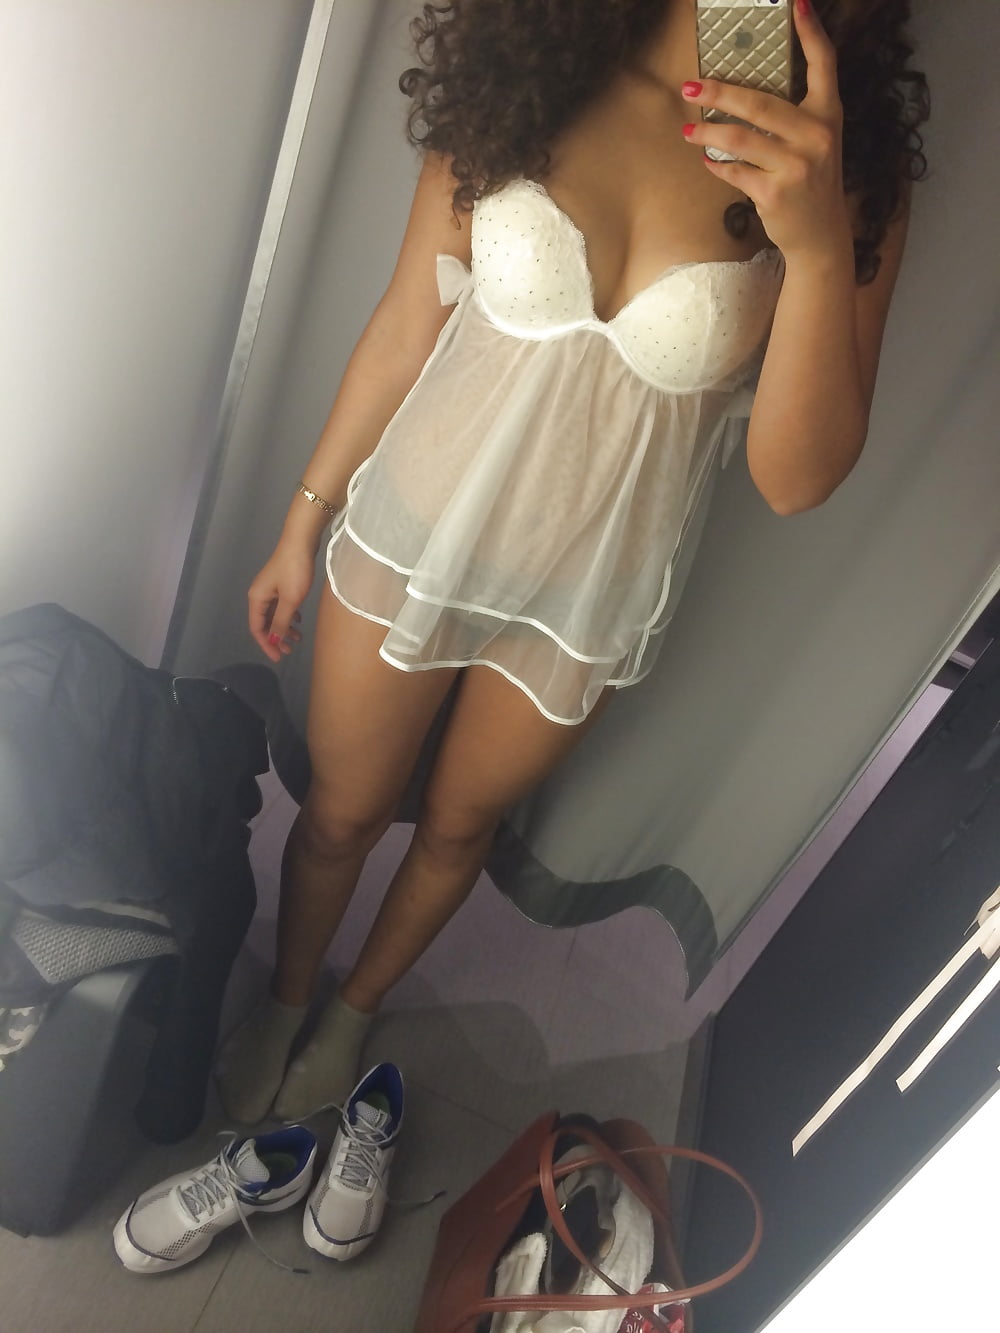 Sexy Dessous Selfie in weissen Negligee - Sextingarea HQ-Bild